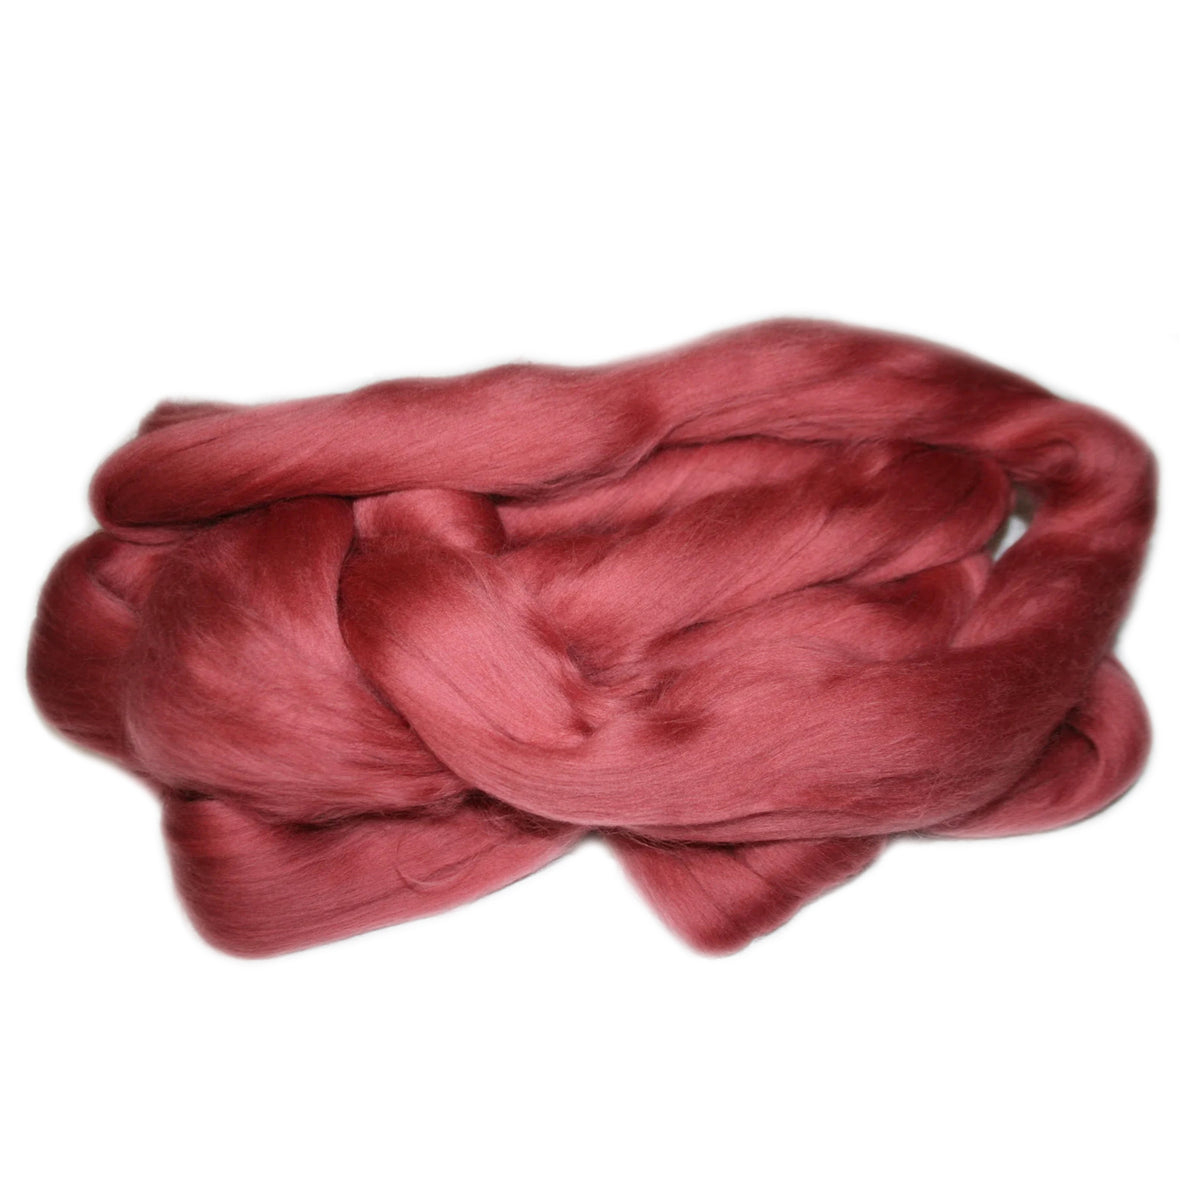 Merino Wool Top Rhubarb 100g